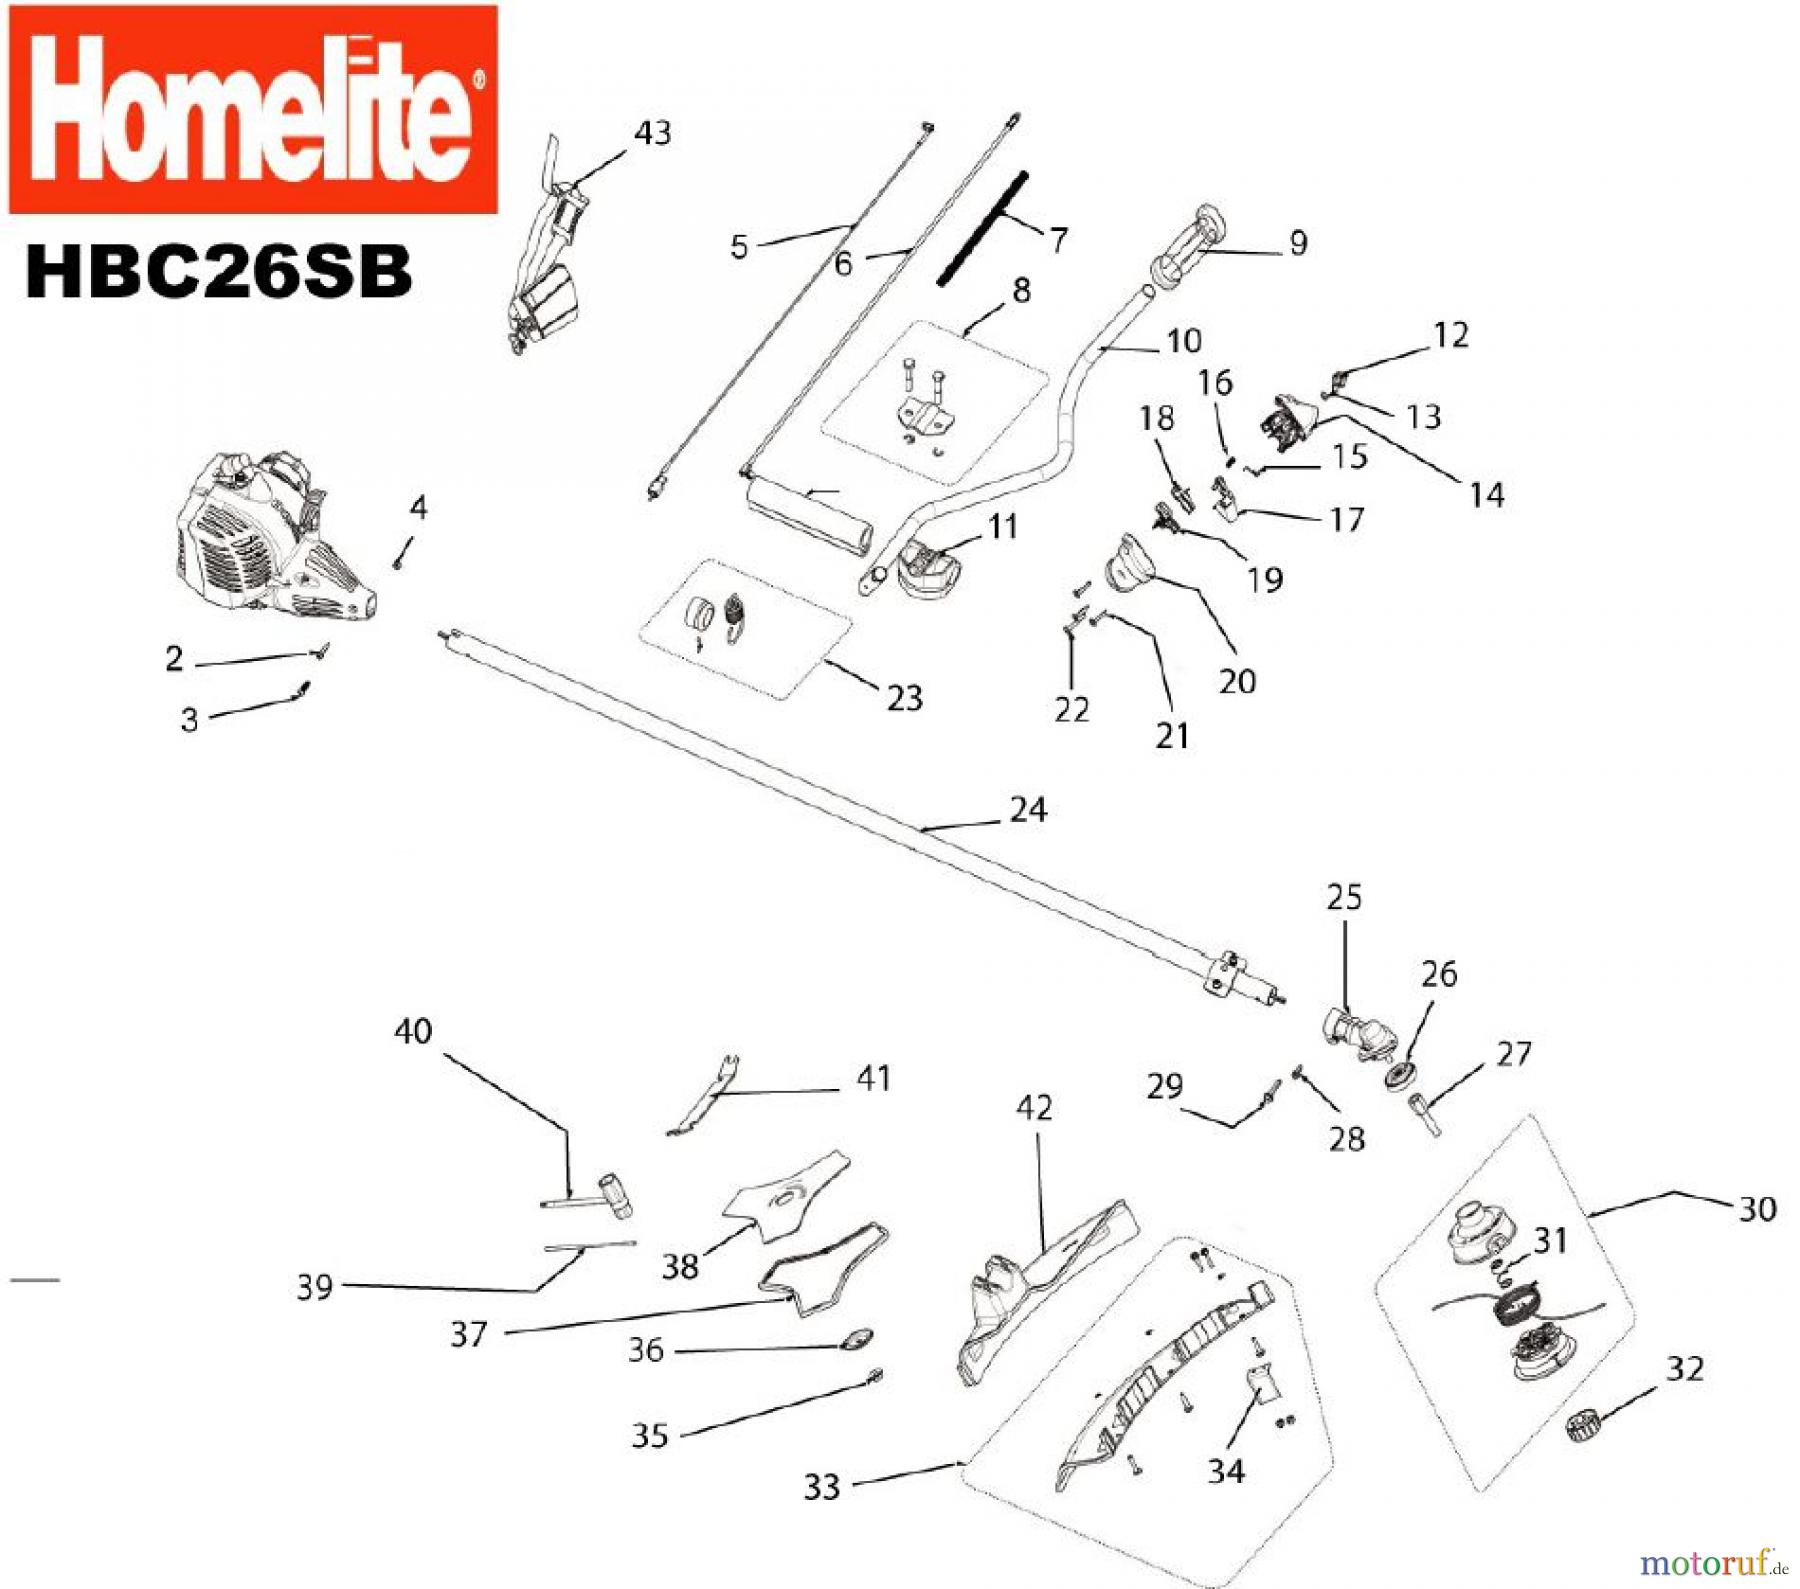  Homelite Motorsensen HBC26SB Seite 1